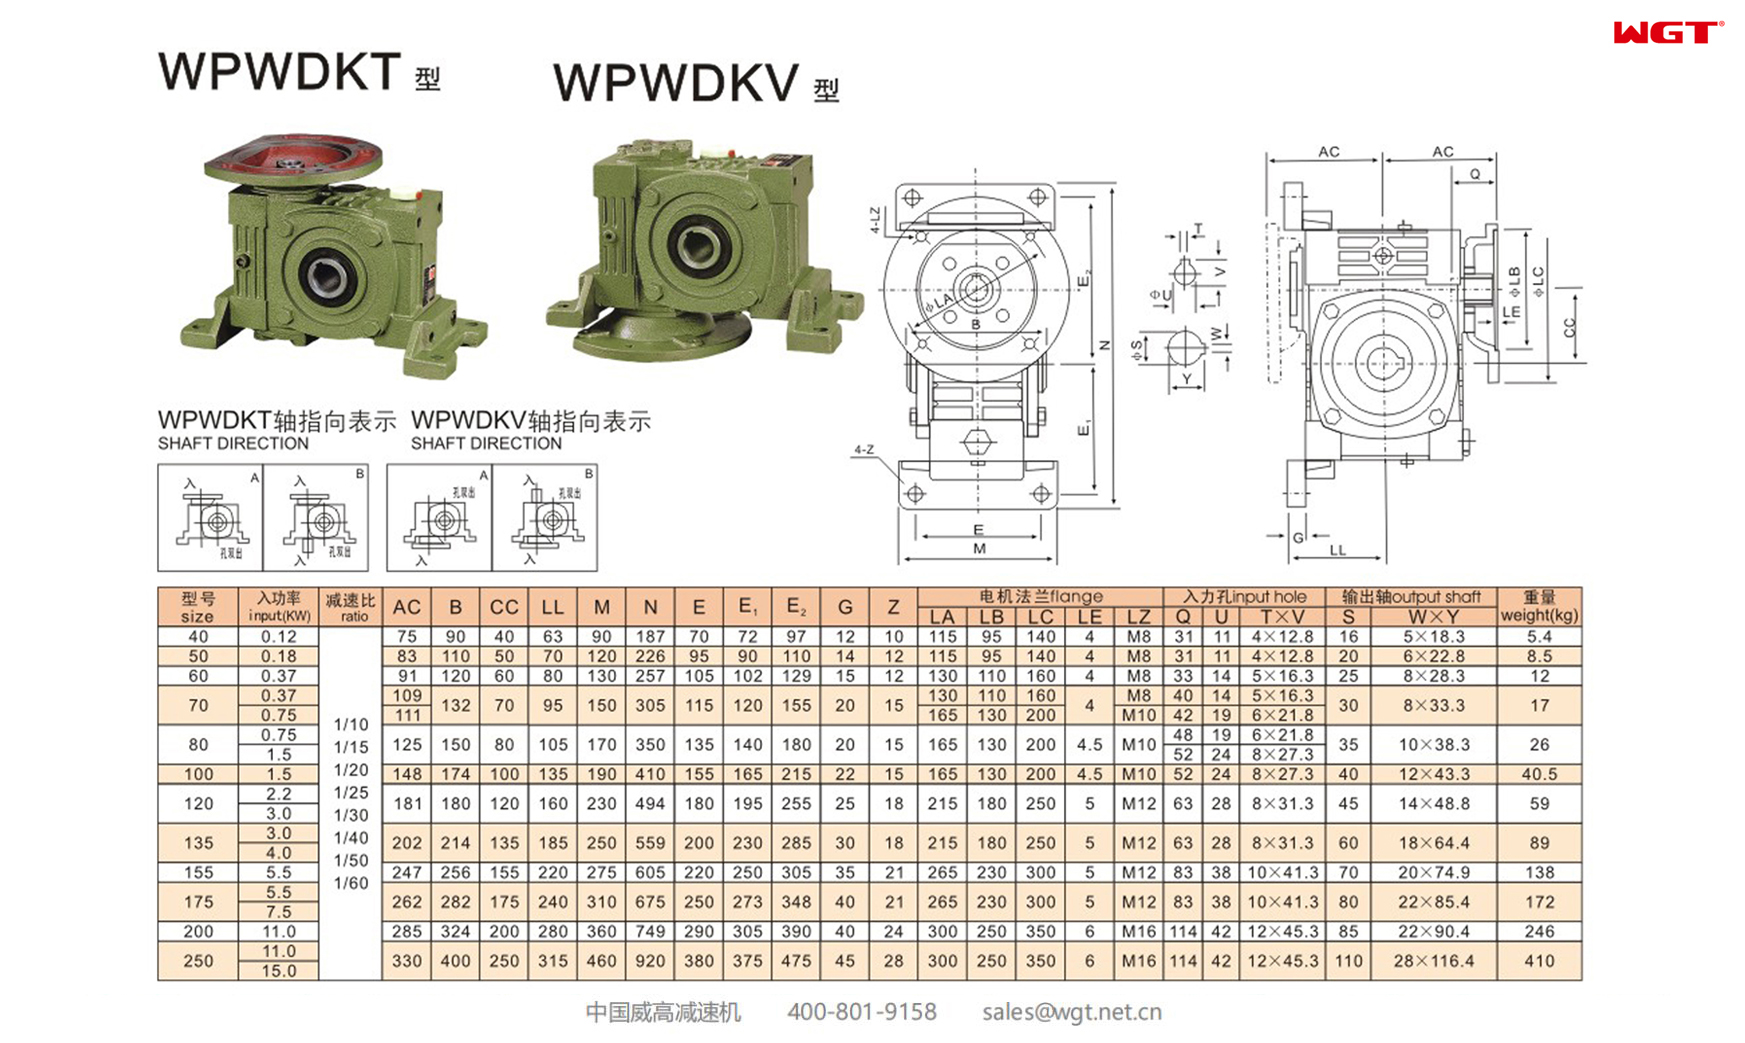 WPWDKT WPWDKV200 蜗轮减速机 万向减速机